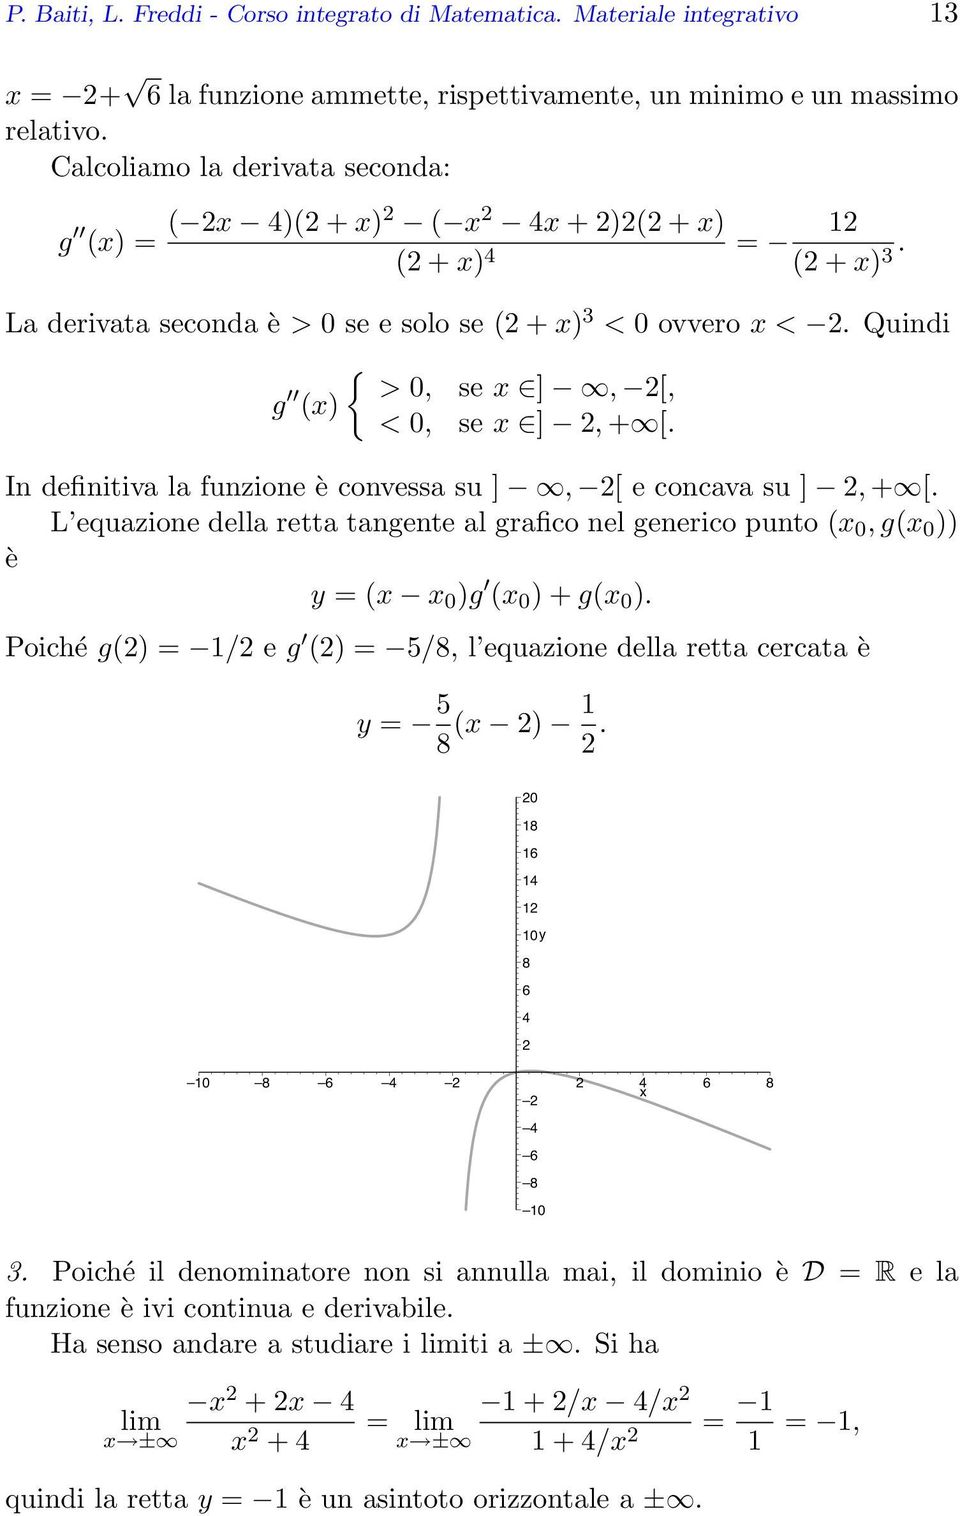 In definitiva la funzione è convessa su ], [ e concava su ], + [. L equazione della retta tangente al grafico nel generico punto ( 0, g( 0 )) è = ( 0 )g ( 0 ) + g( 0 ).